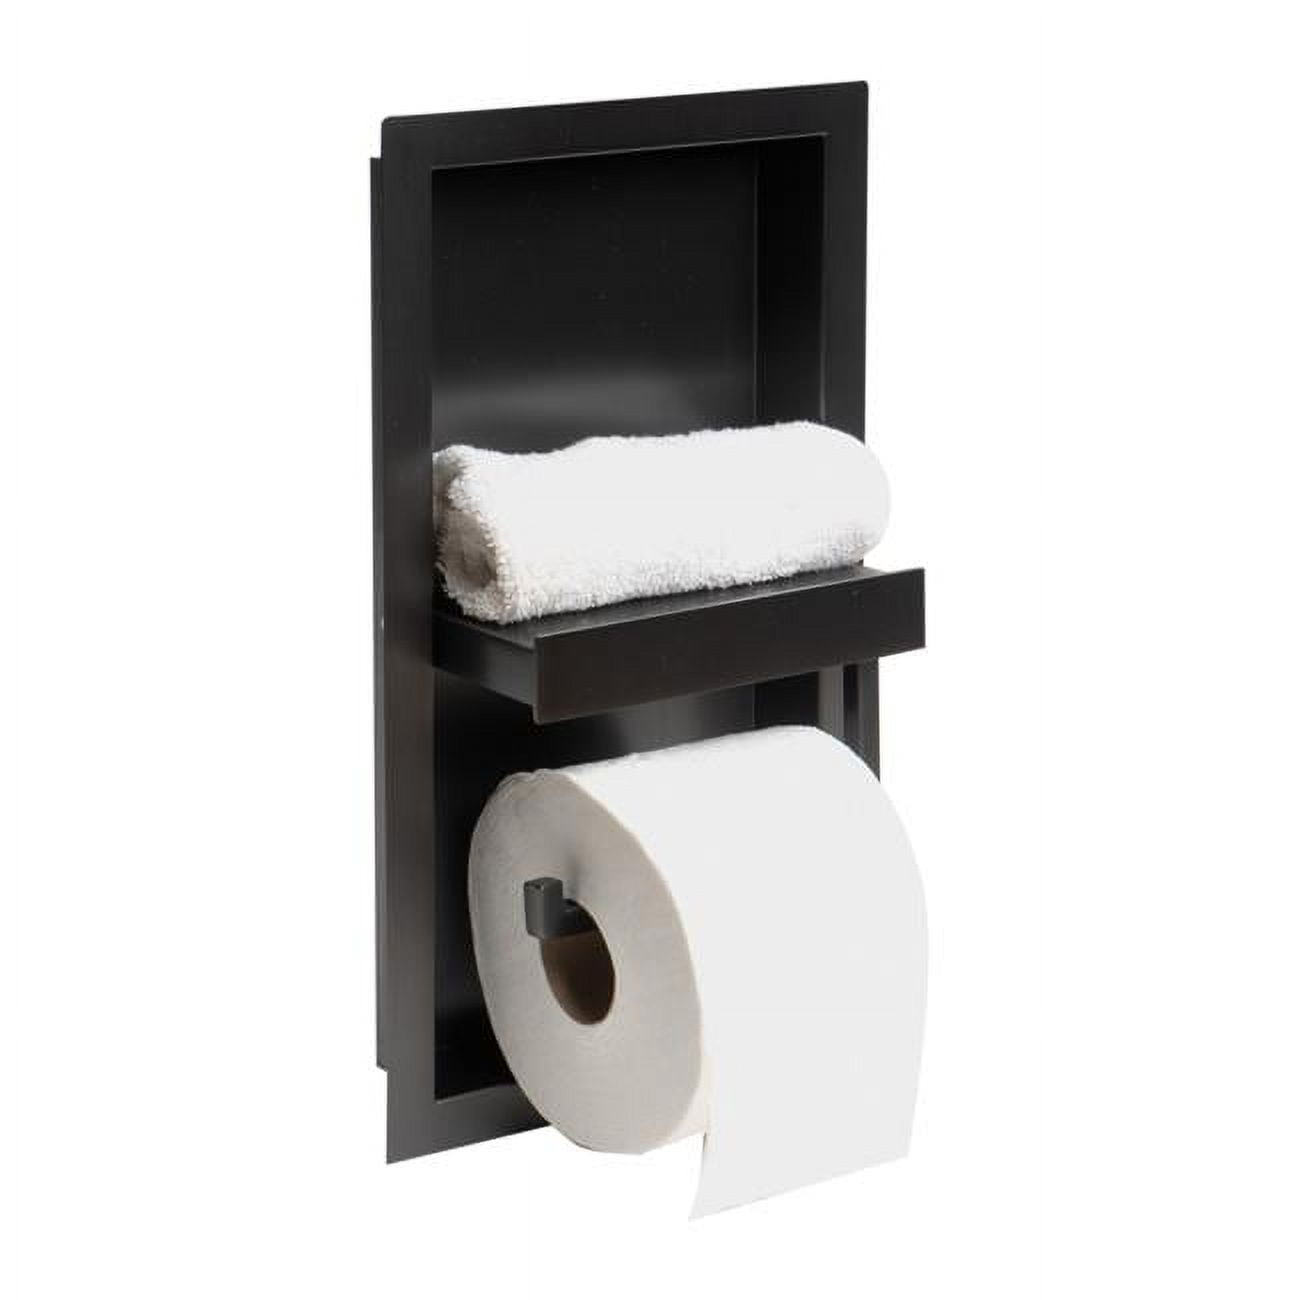  WZKALY Matte Black Recessed Toilet Paper Holder for